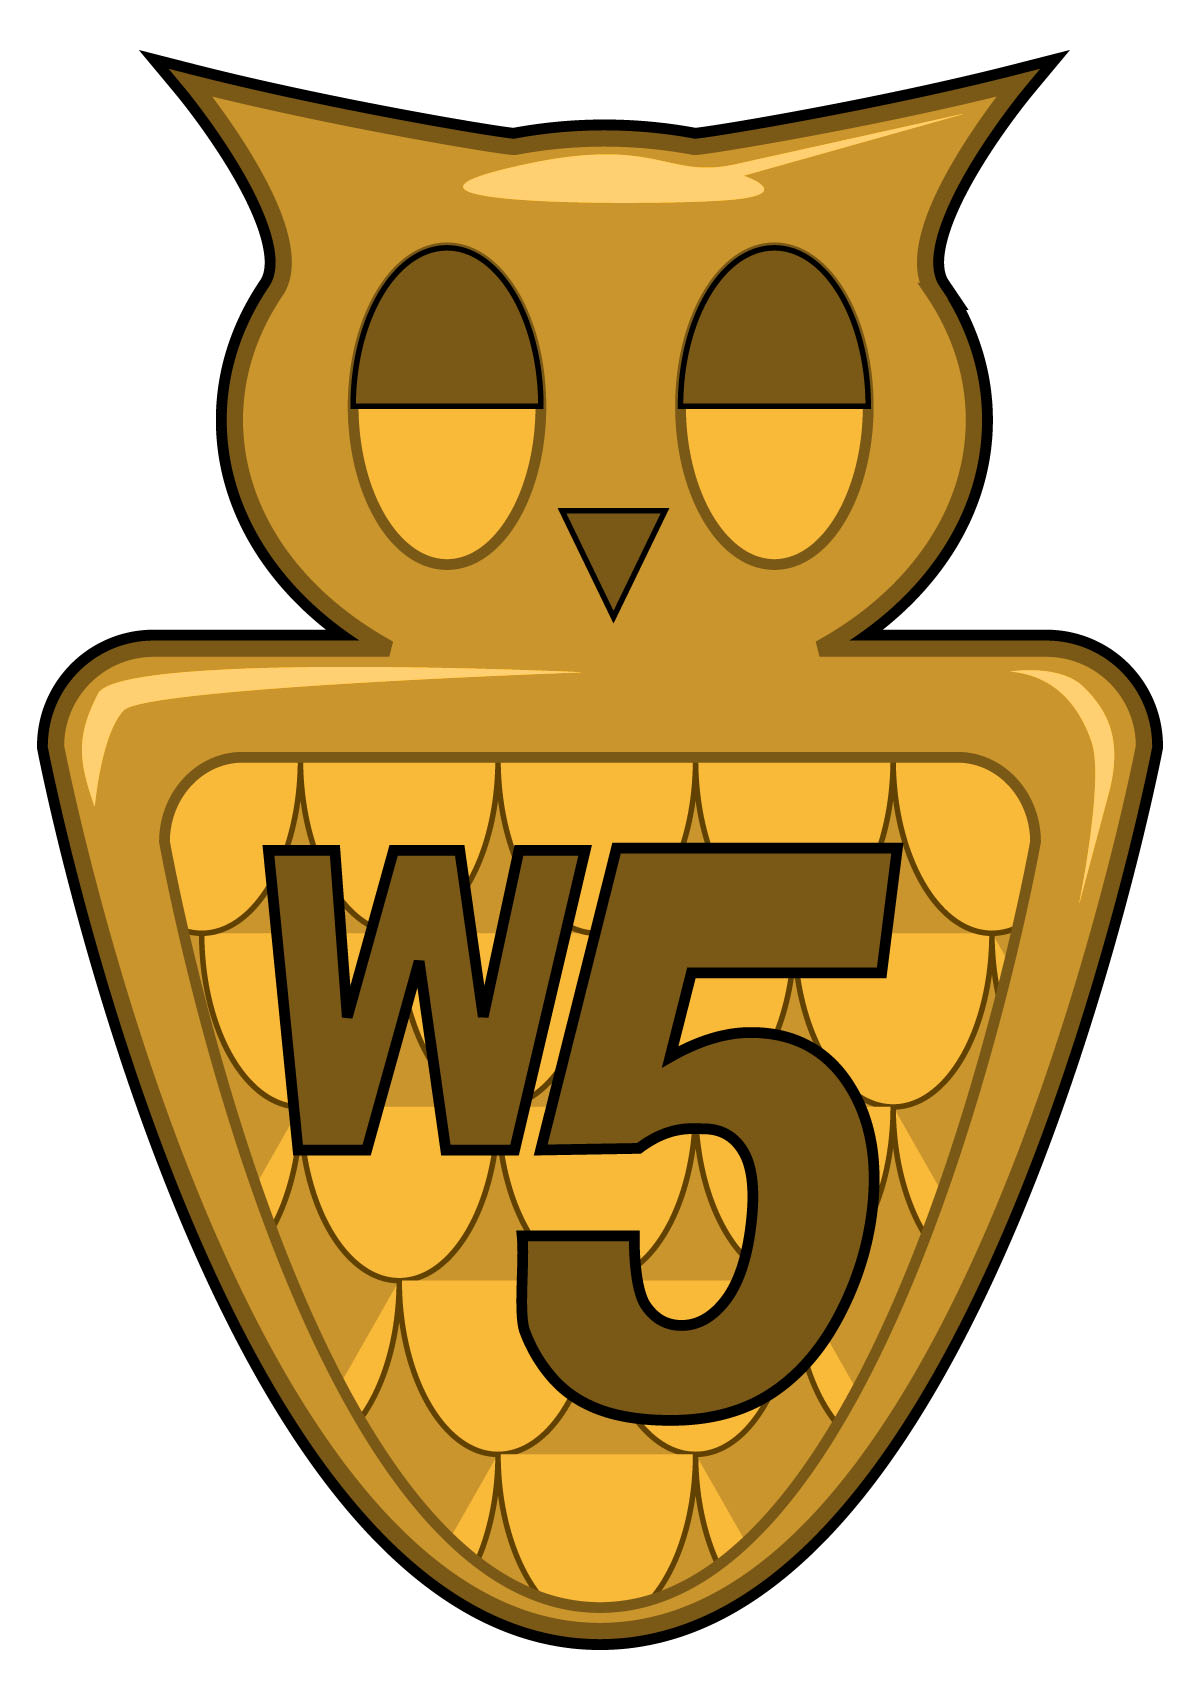 Wise Five team insignia